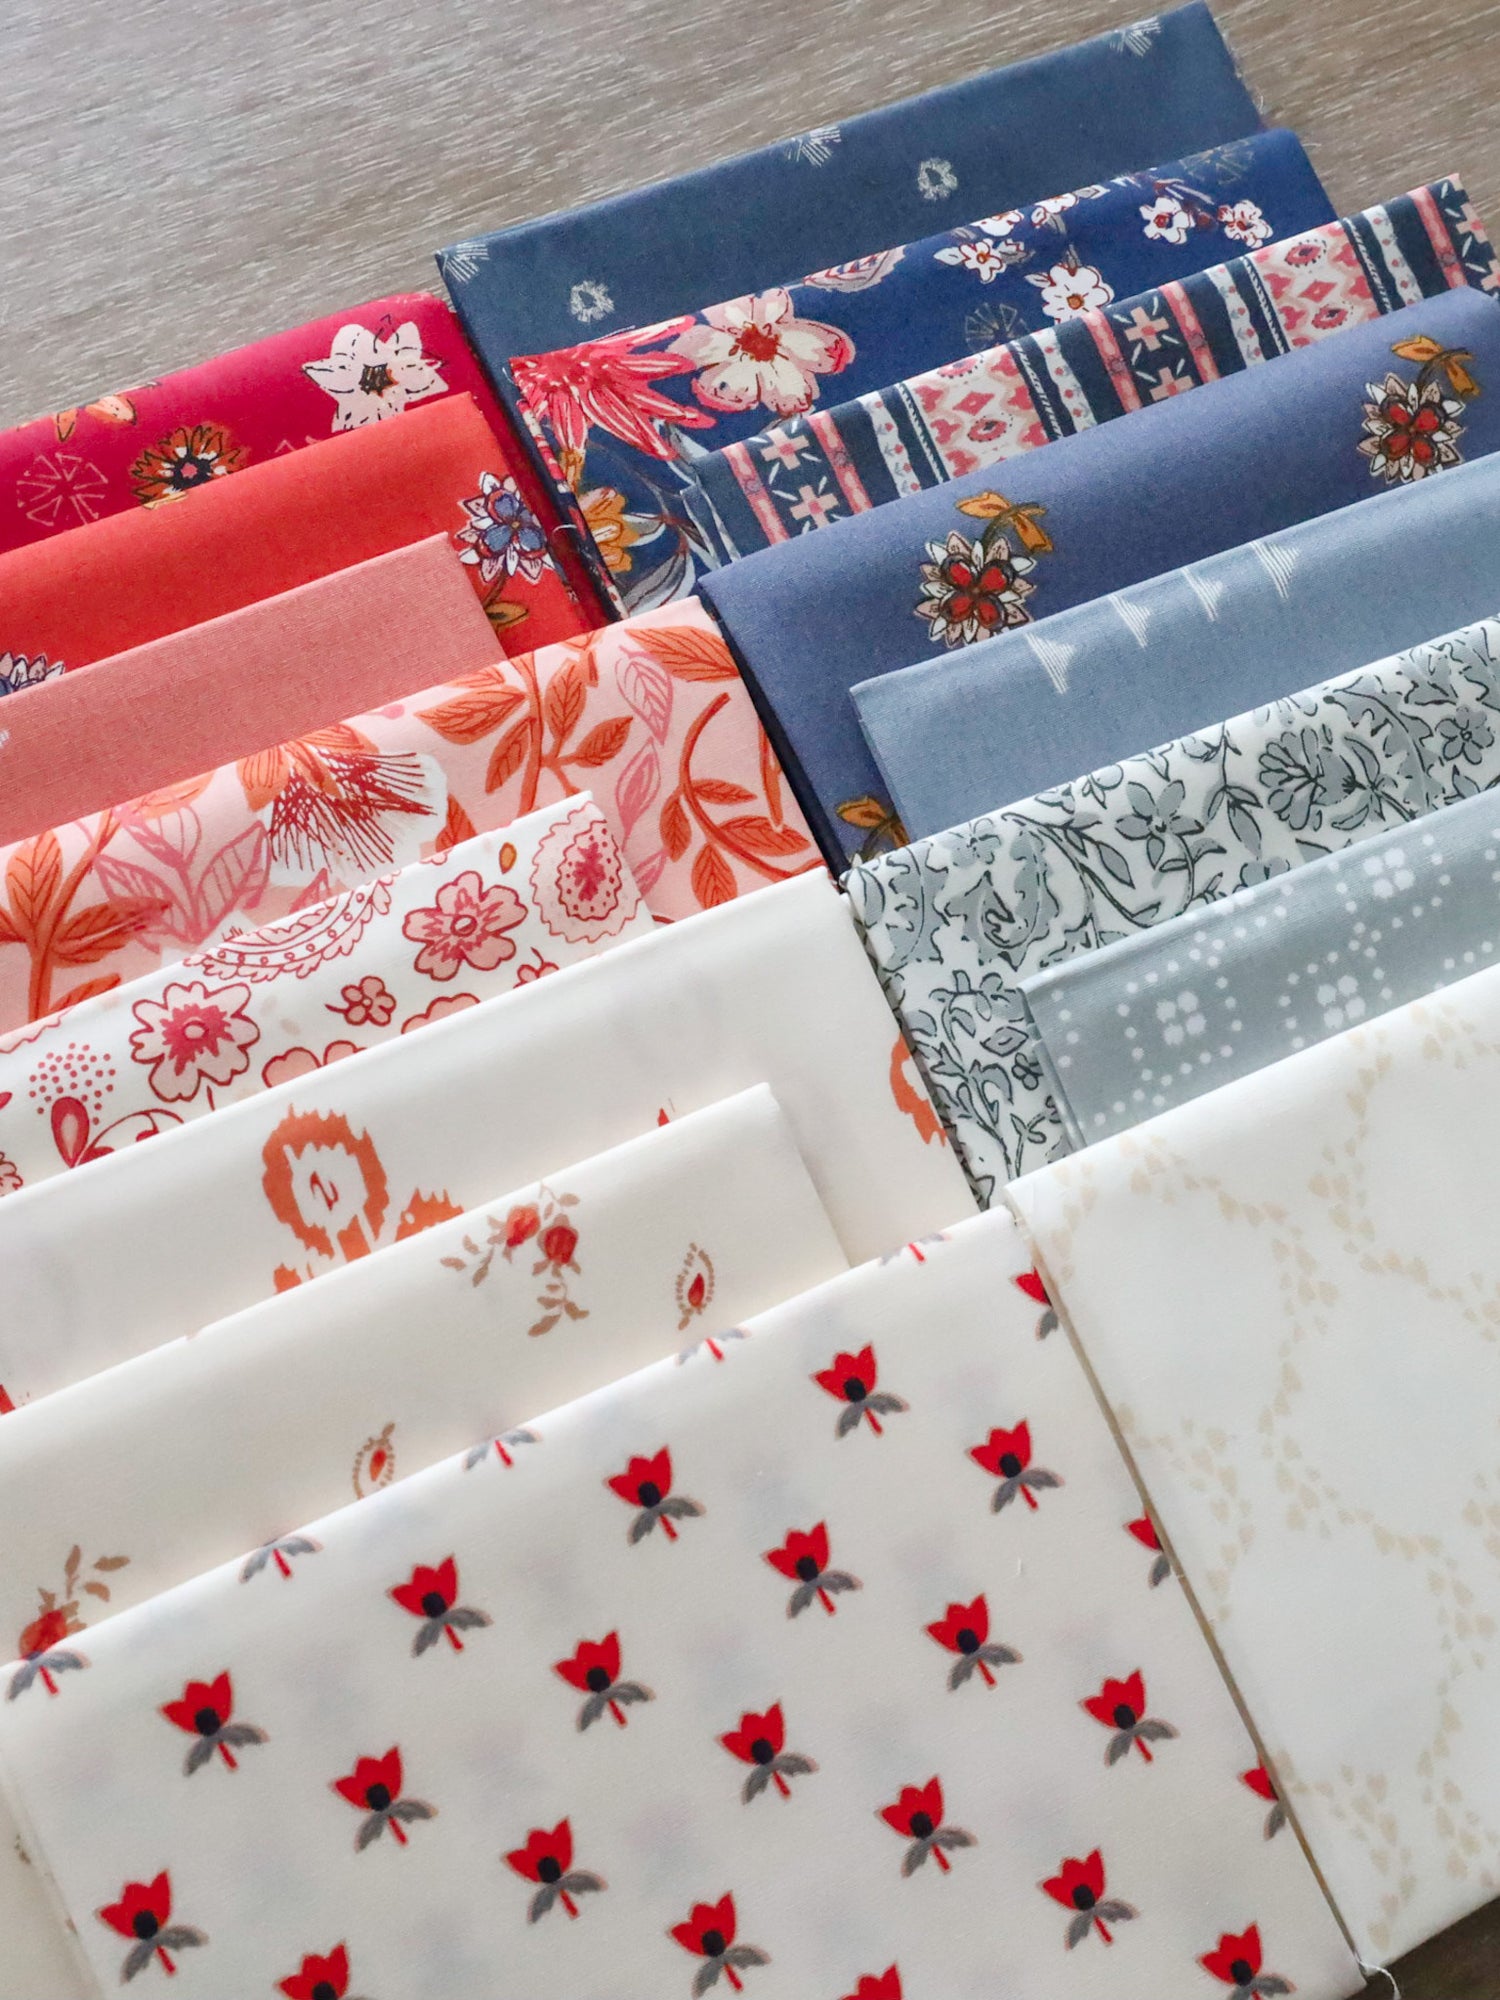 Fabric Bundles | Lo & Behold Stitchery